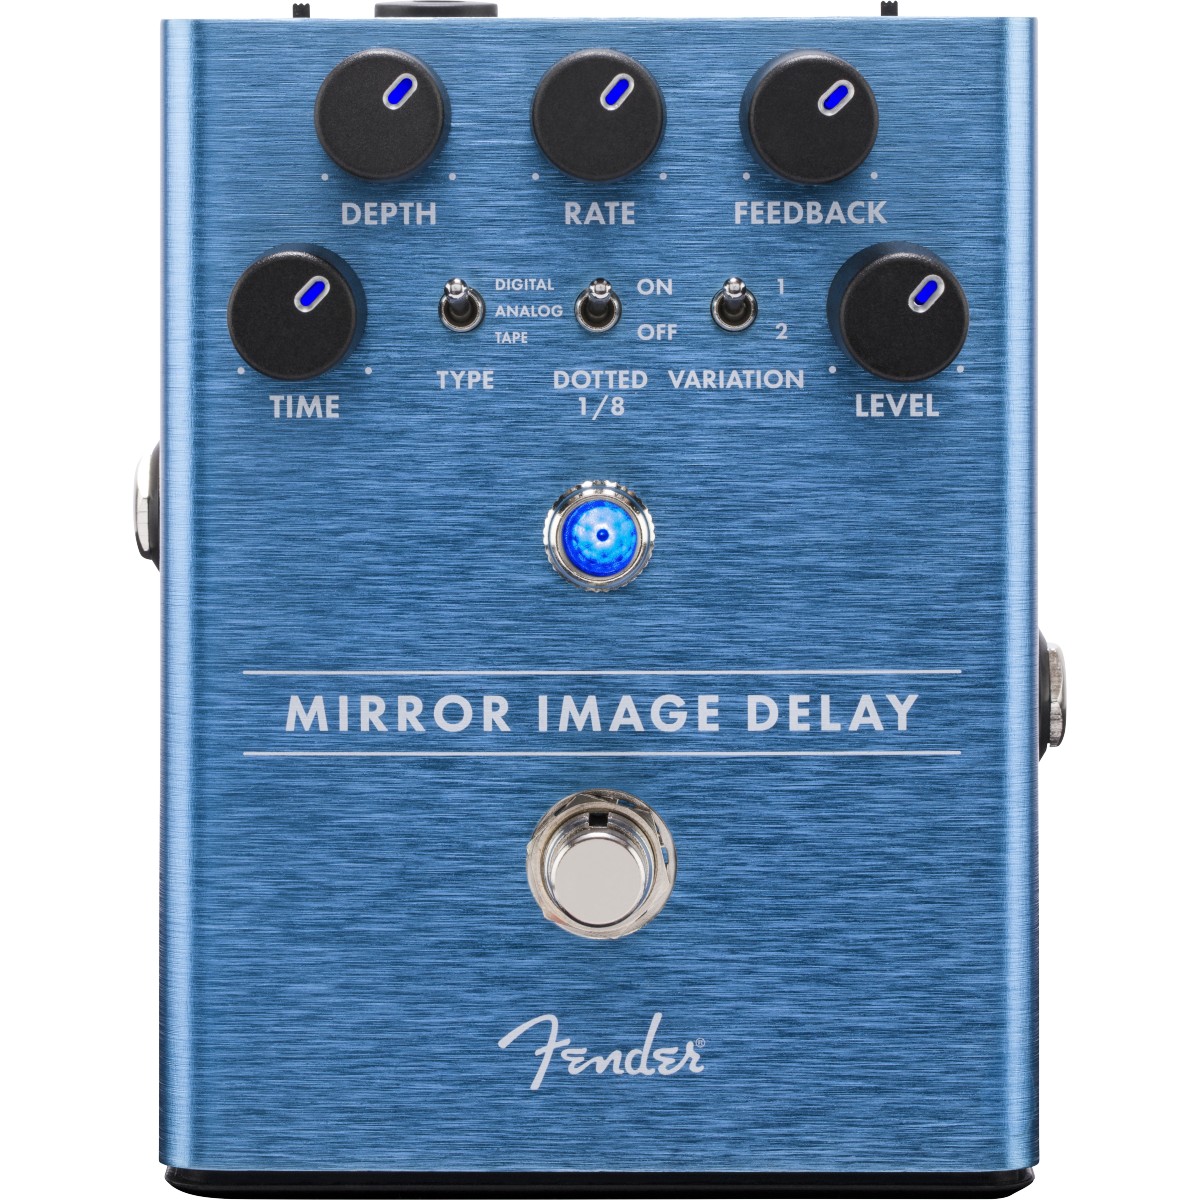 Pedale Fender Mirror Image Delay 0234535000